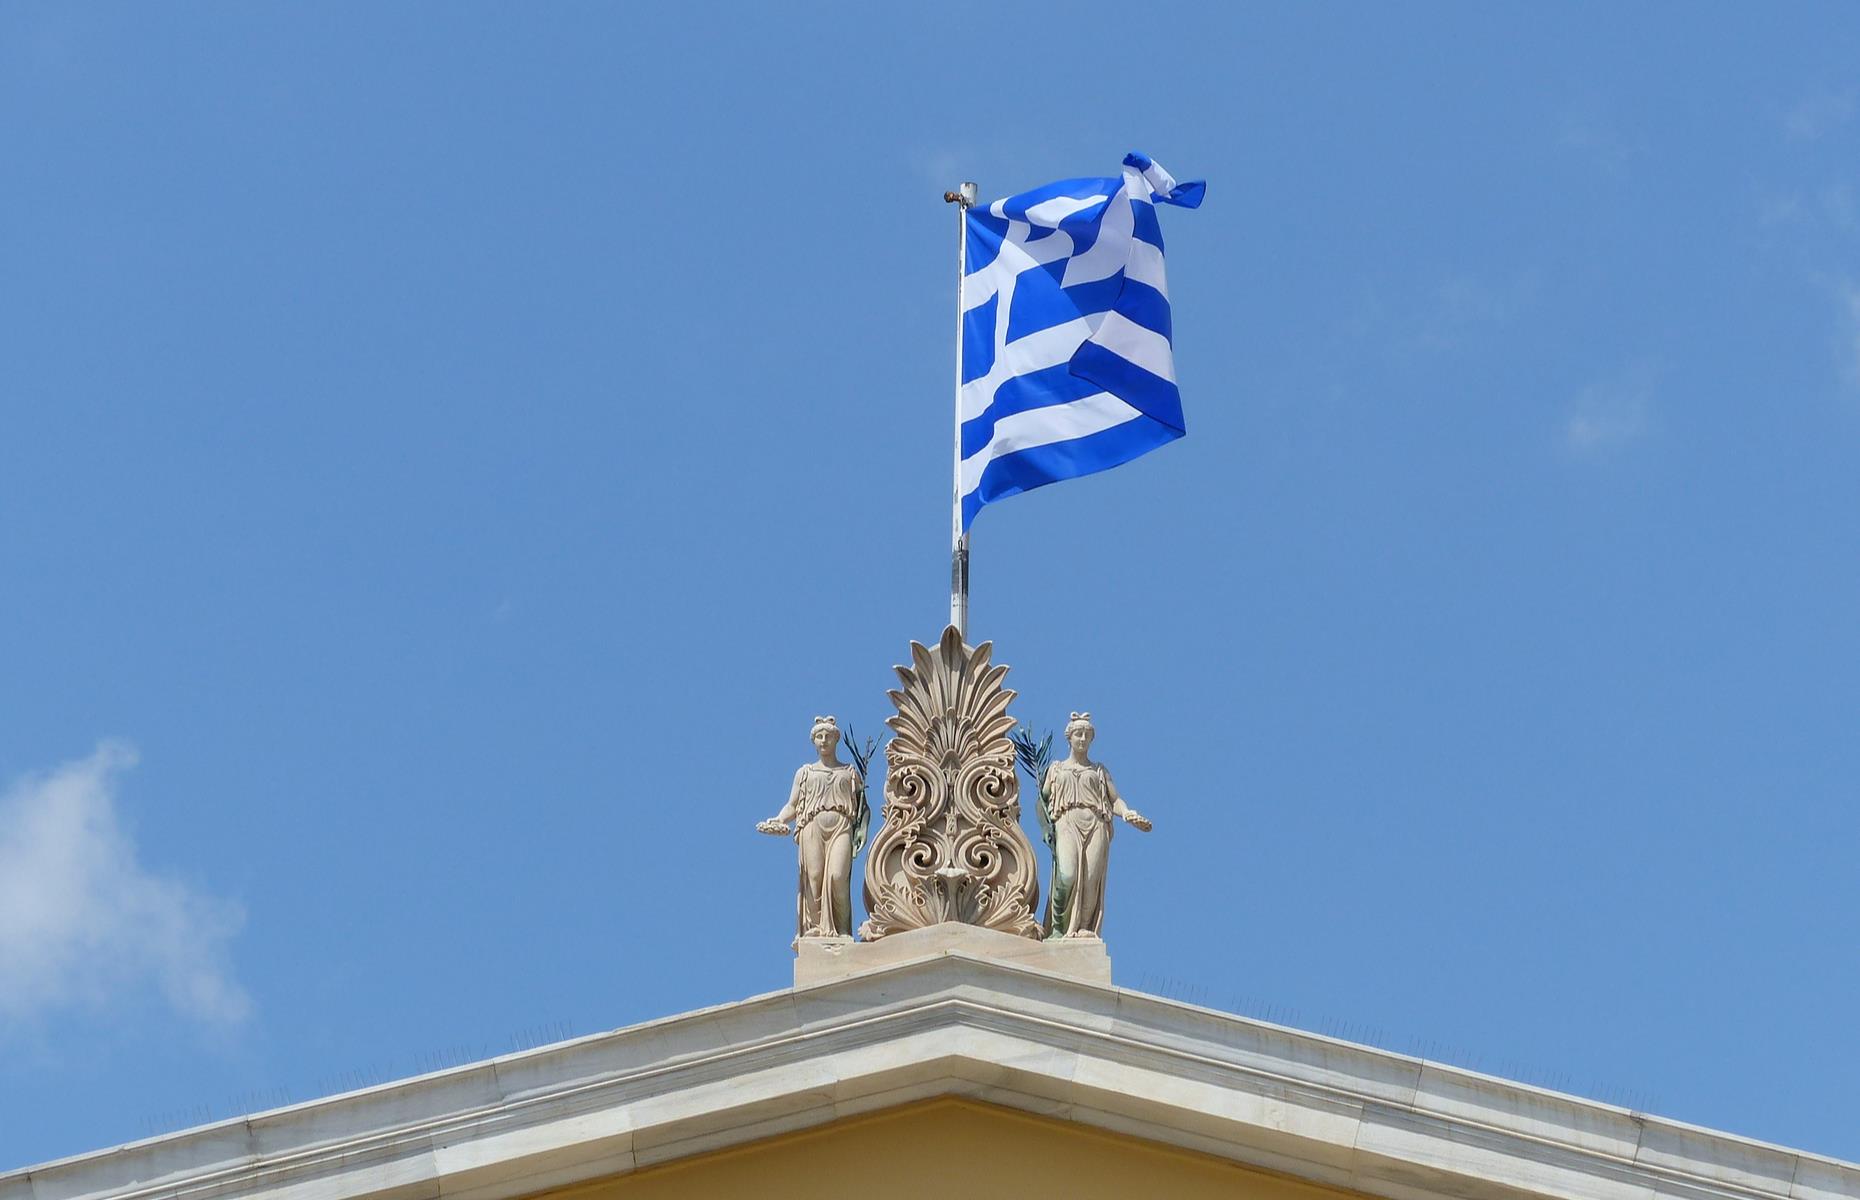 Aldi's Grexit